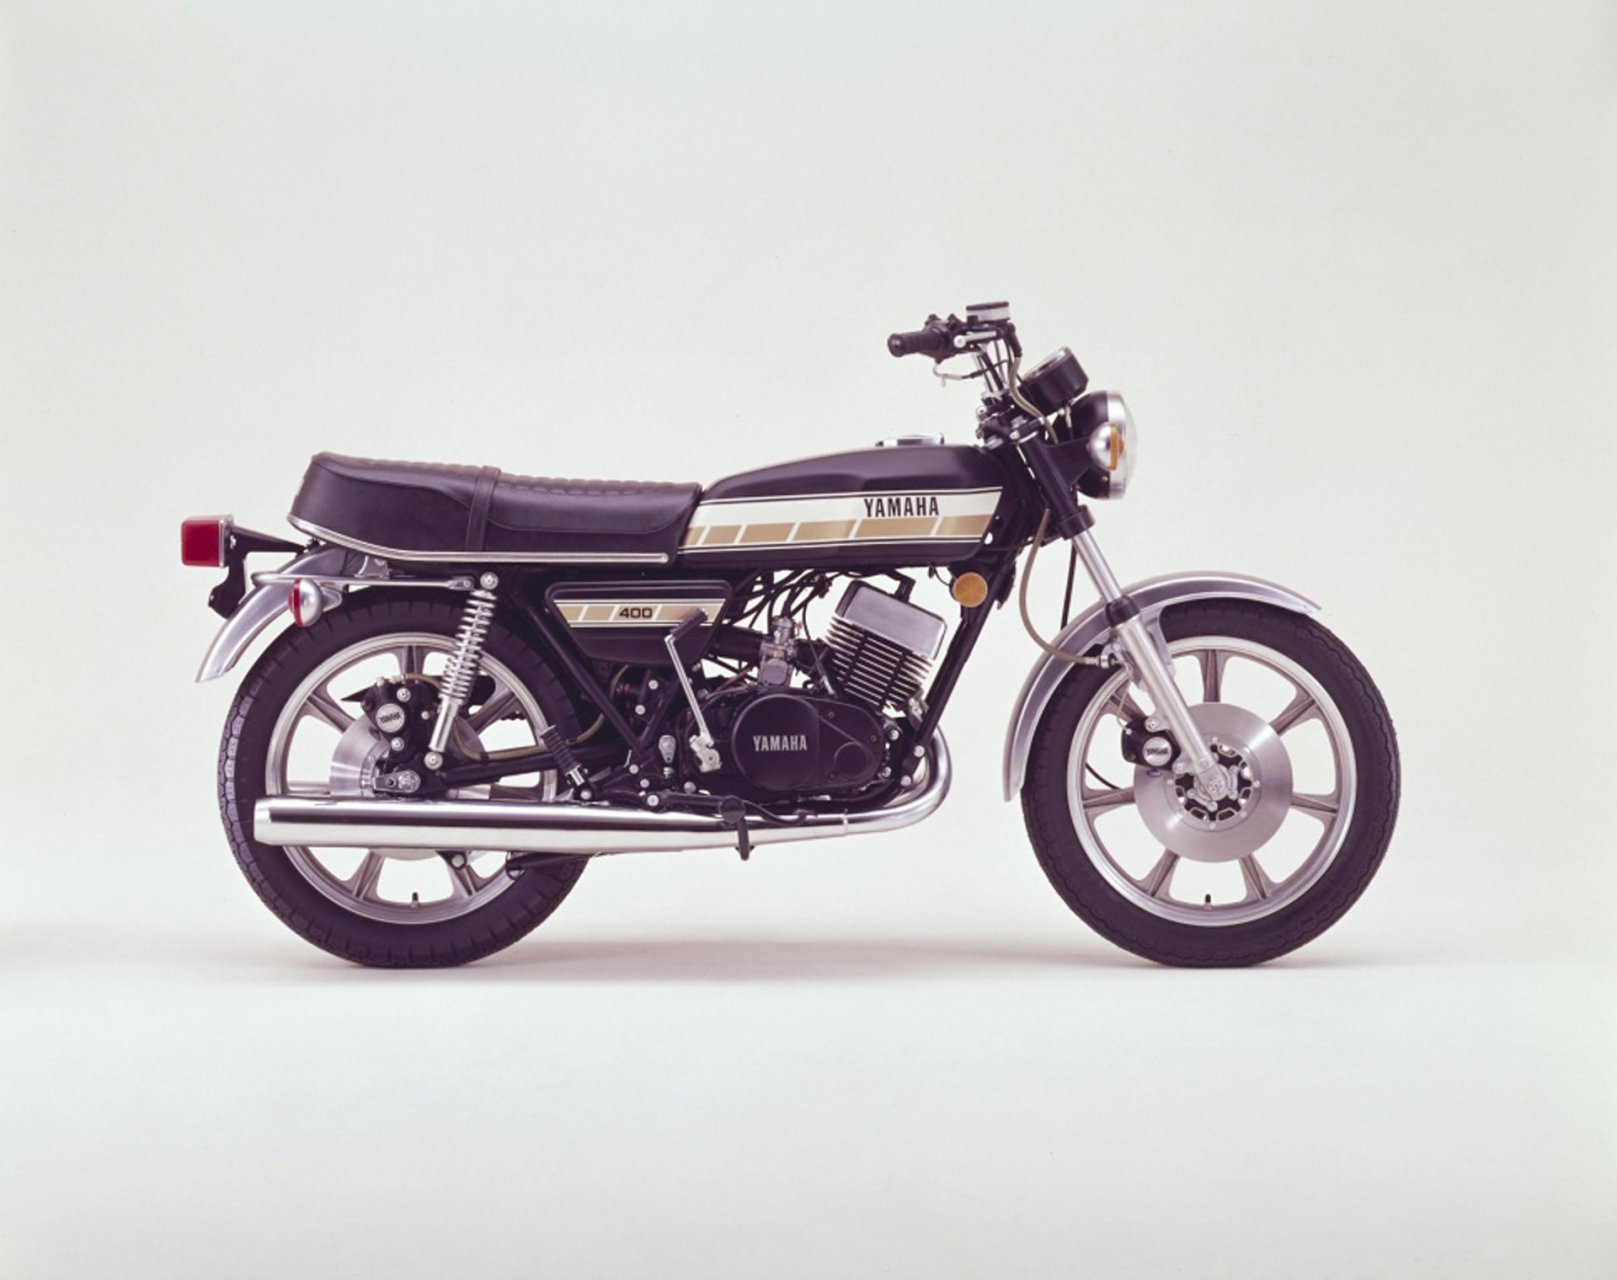 Moto del día: Yamaha RD 400